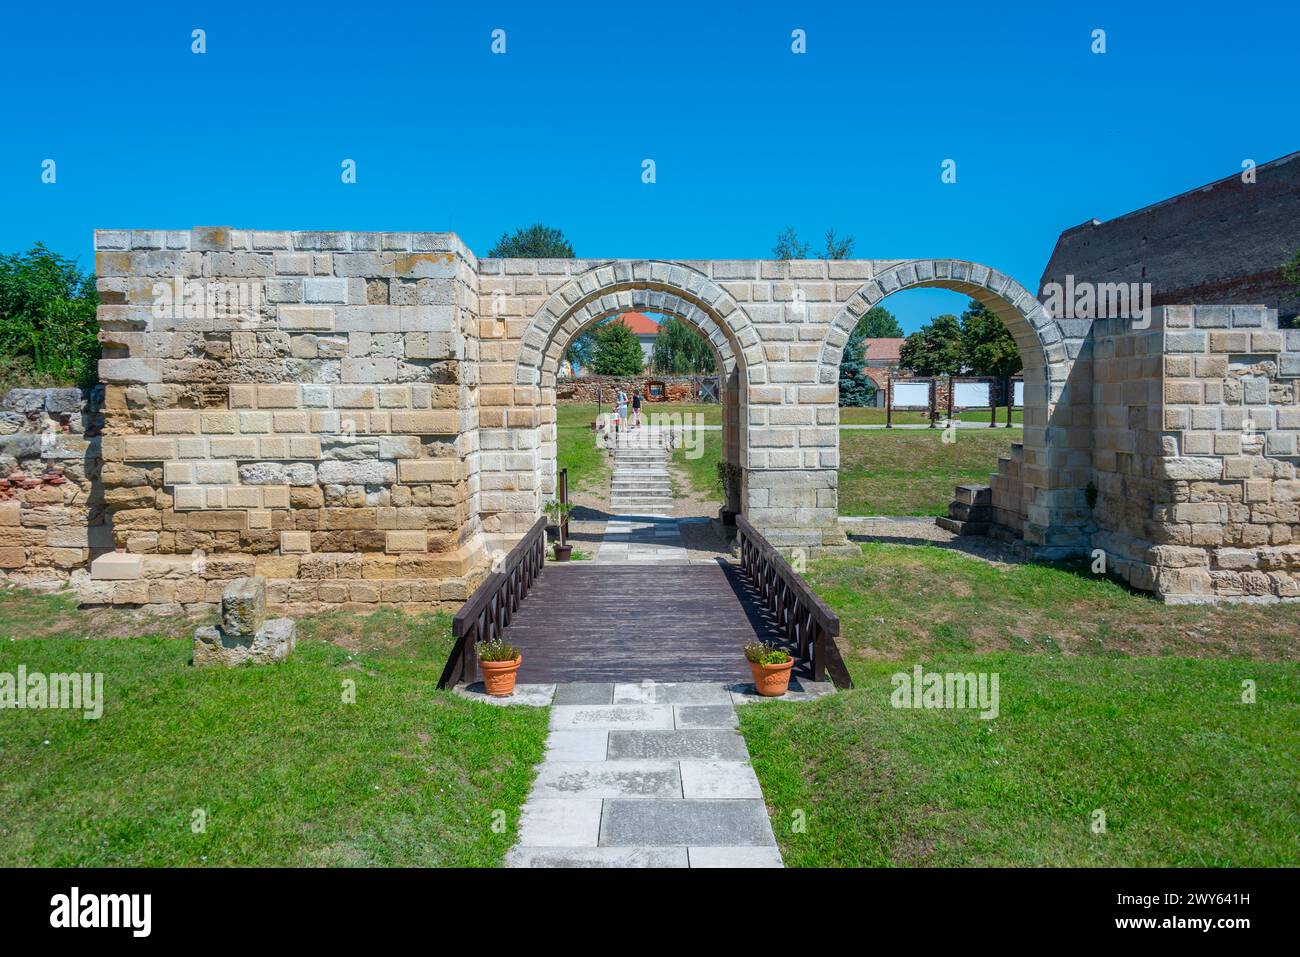 Apulum roman castrum south gate of Alba Iulia town in Romania Stock Photo